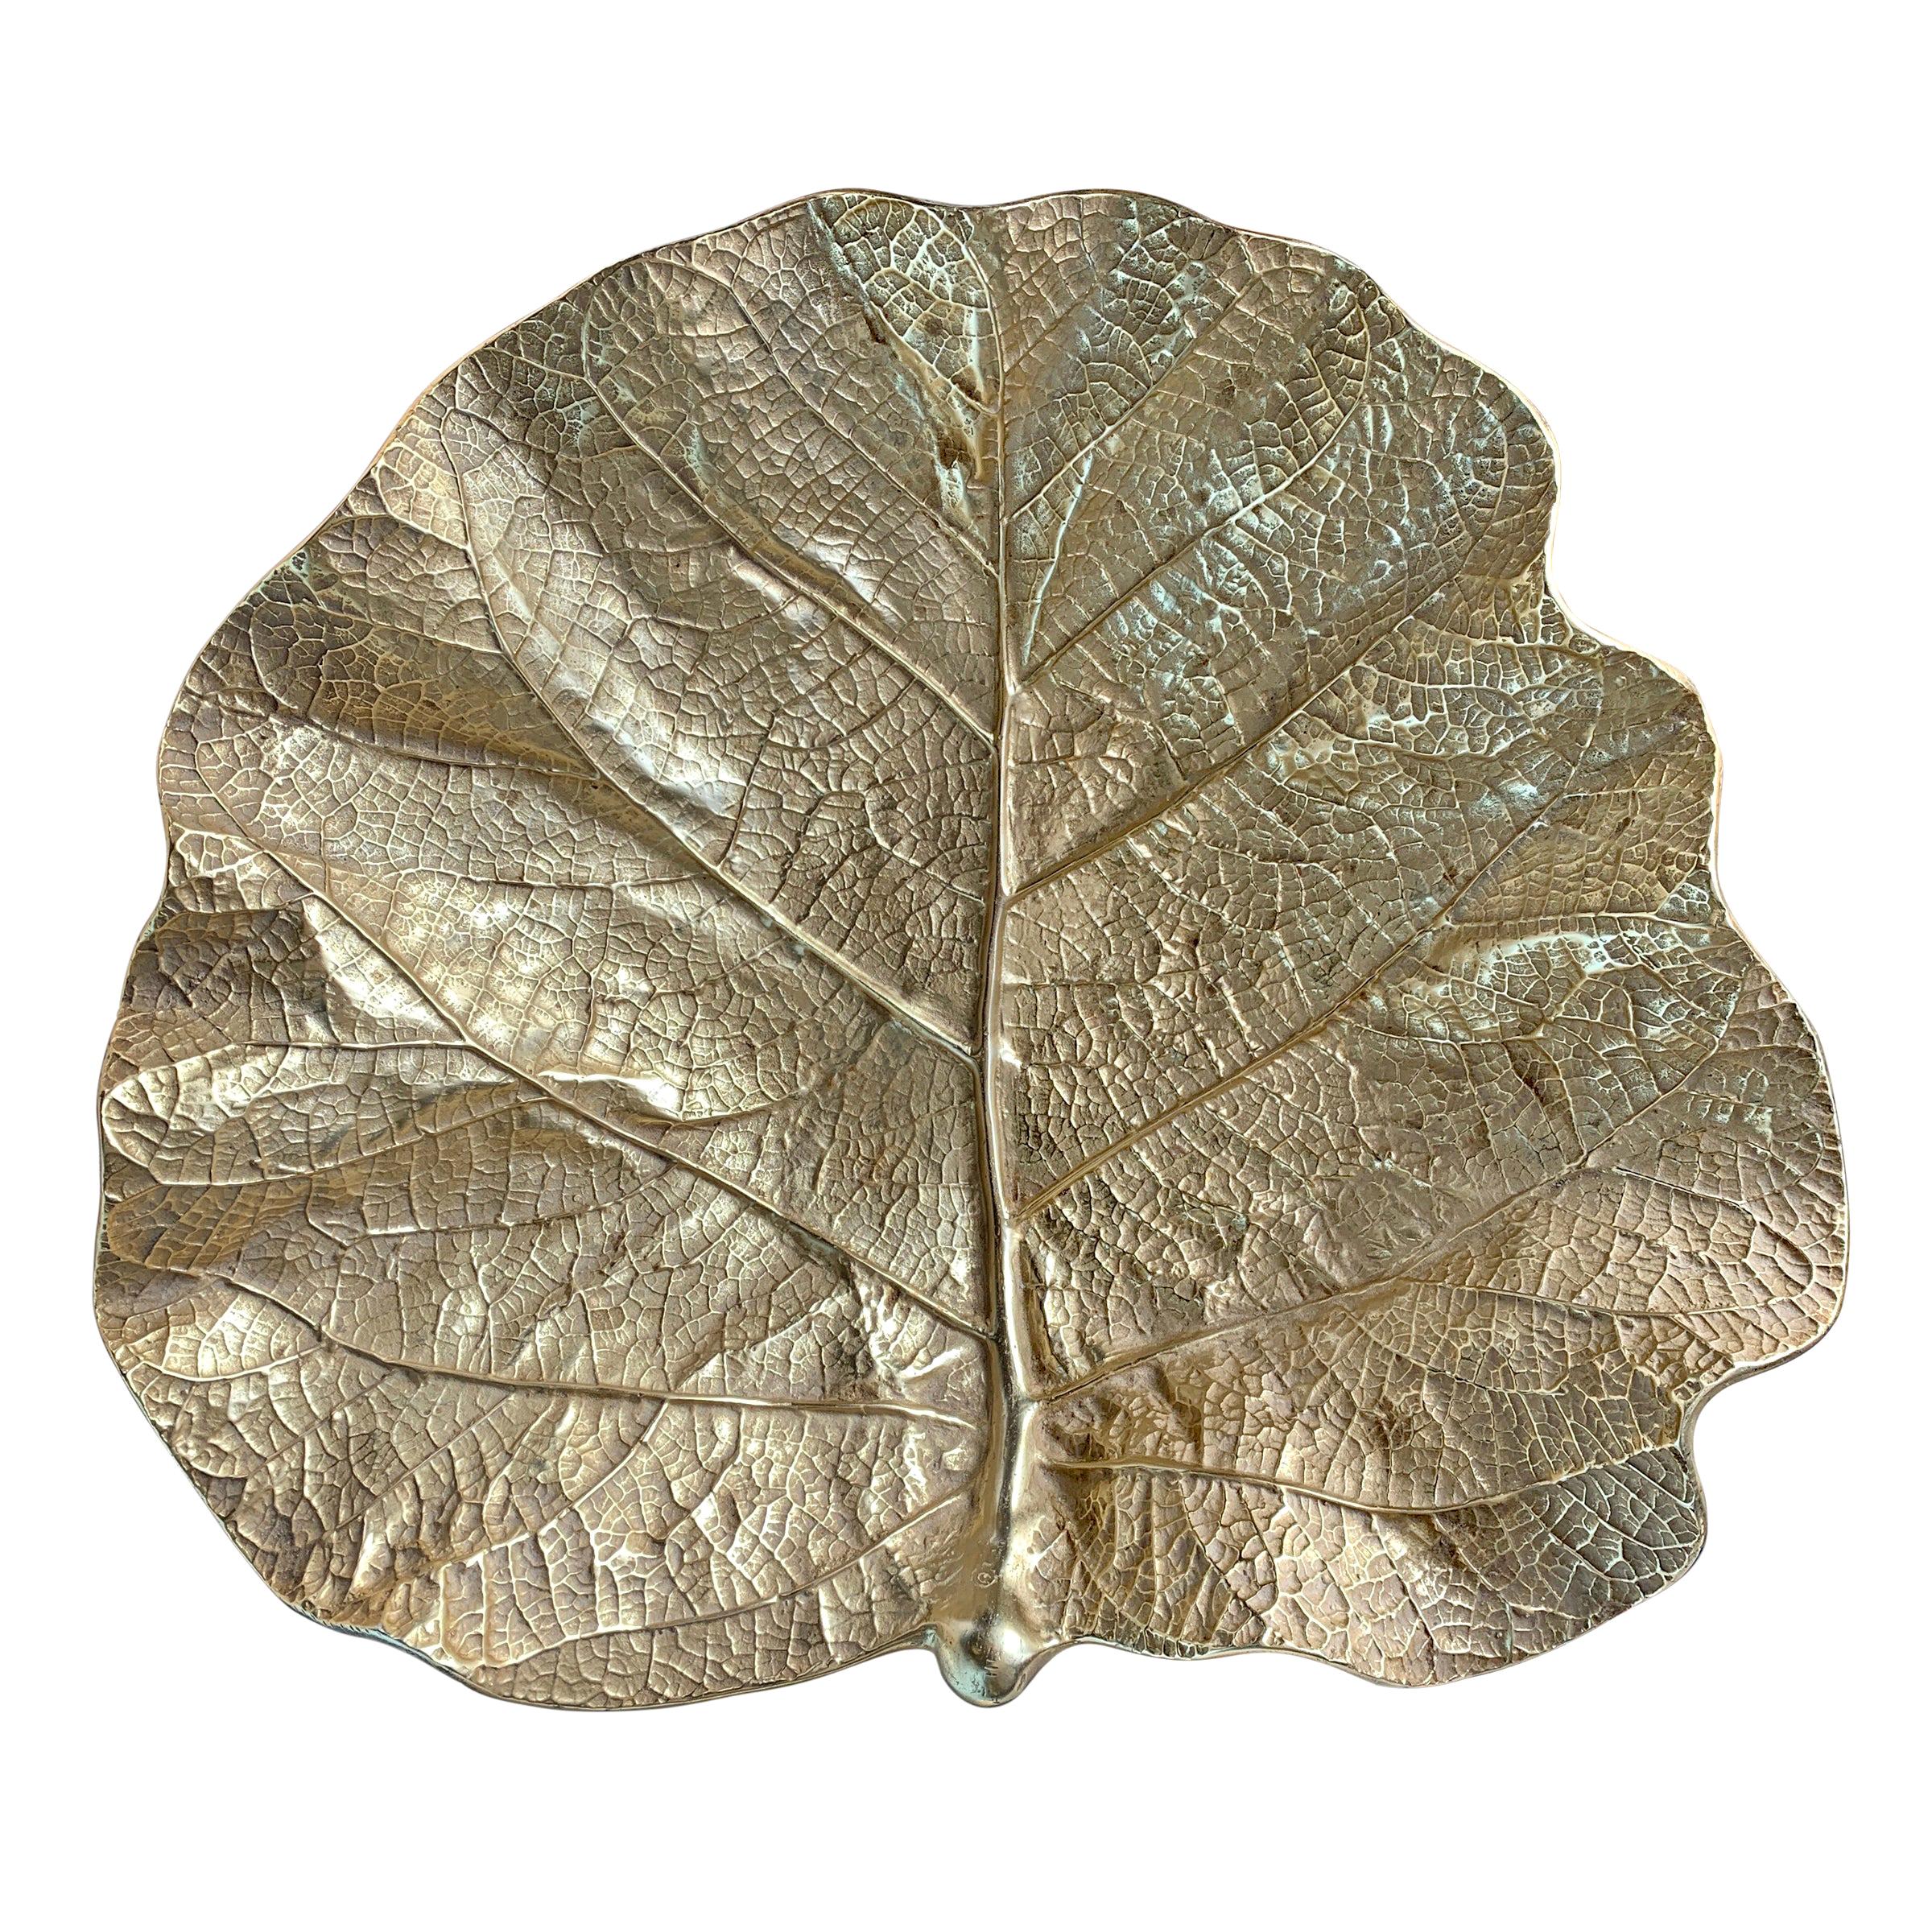 Massive plat à feuilles de figue en laiton moulé en forme de figurine